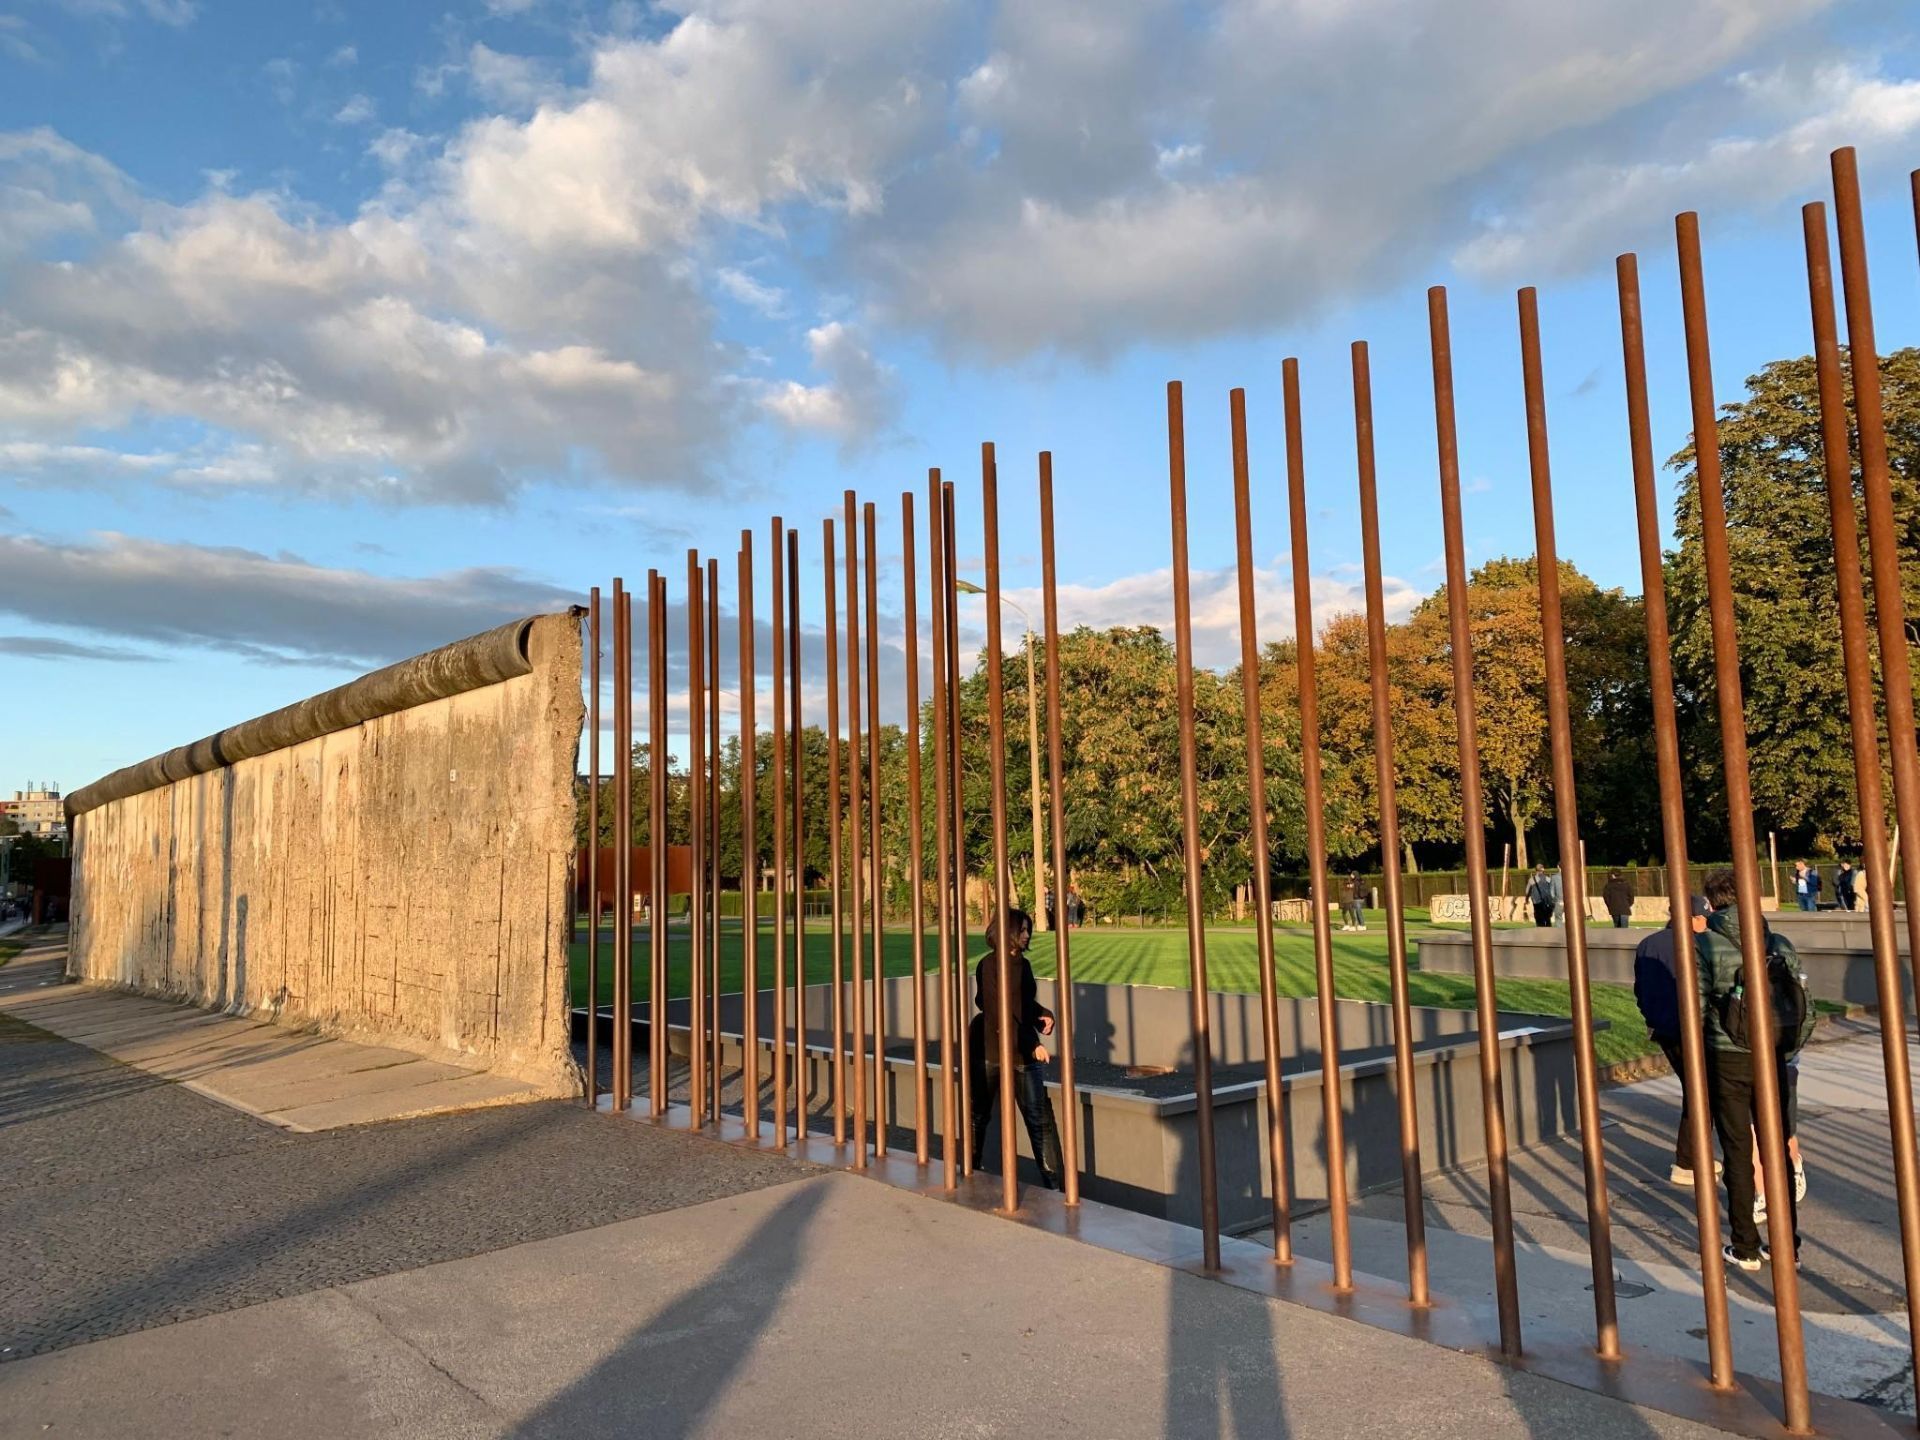 2020柏林墙遗址纪念公园游玩攻略,一片芳草茵茵的绿地,少许游